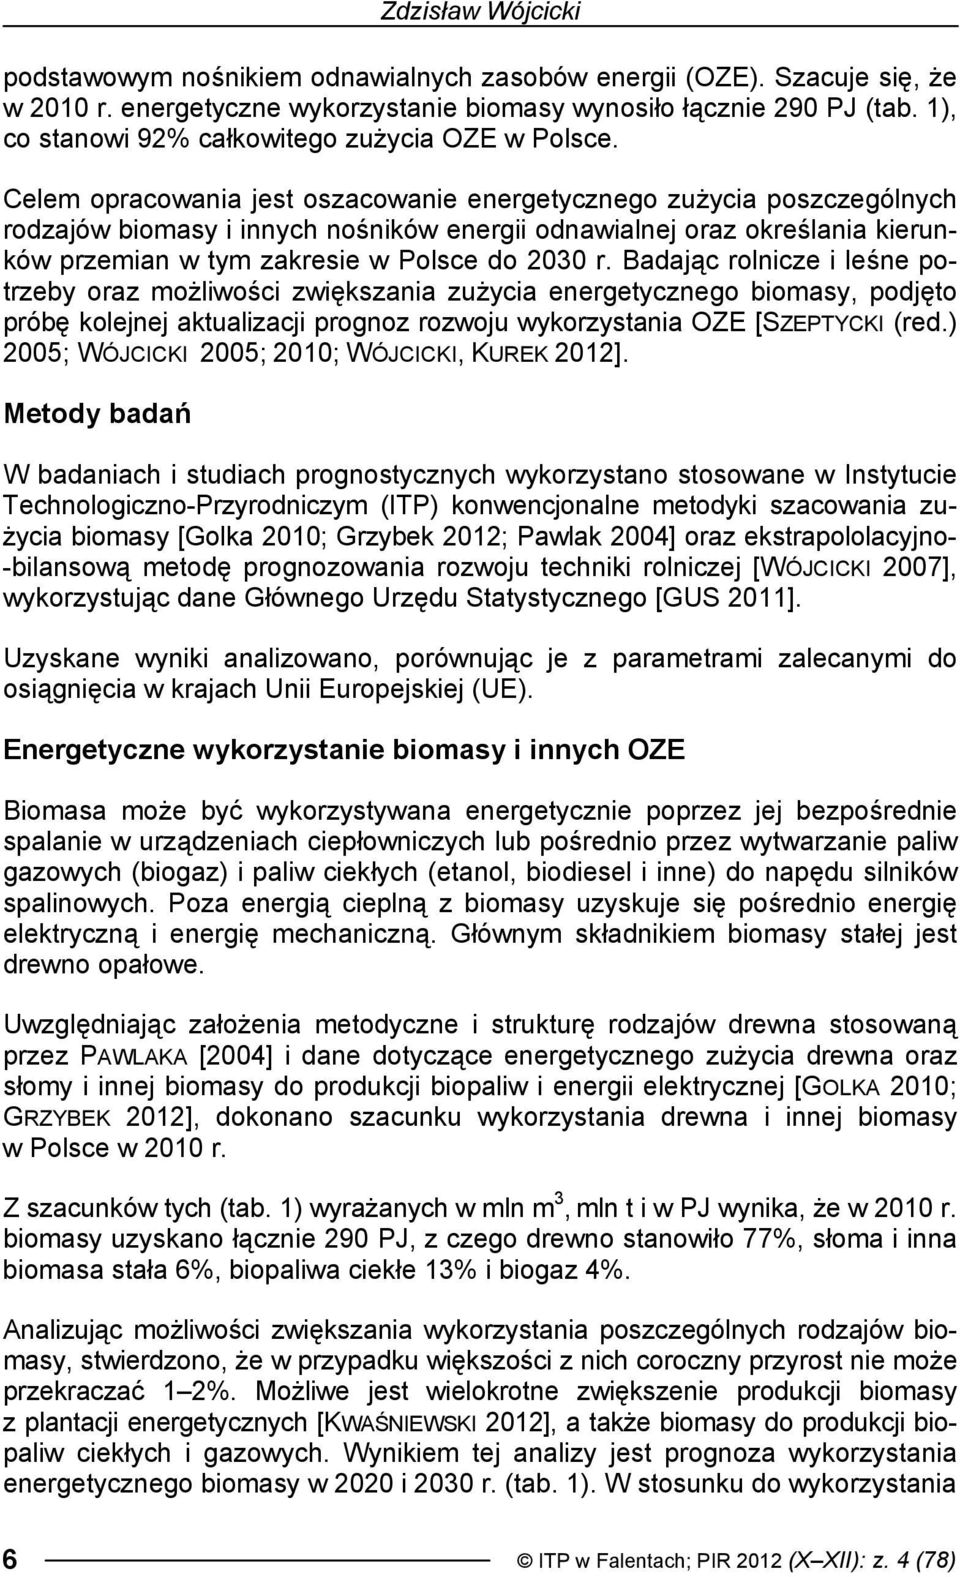 Celem opracowania jest oszacowanie energetycznego zużycia poszczególnych rodzajów biomasy i innych nośników energii odnawialnej oraz określania kierunków przemian w tym zakresie w Polsce do 2030 r.